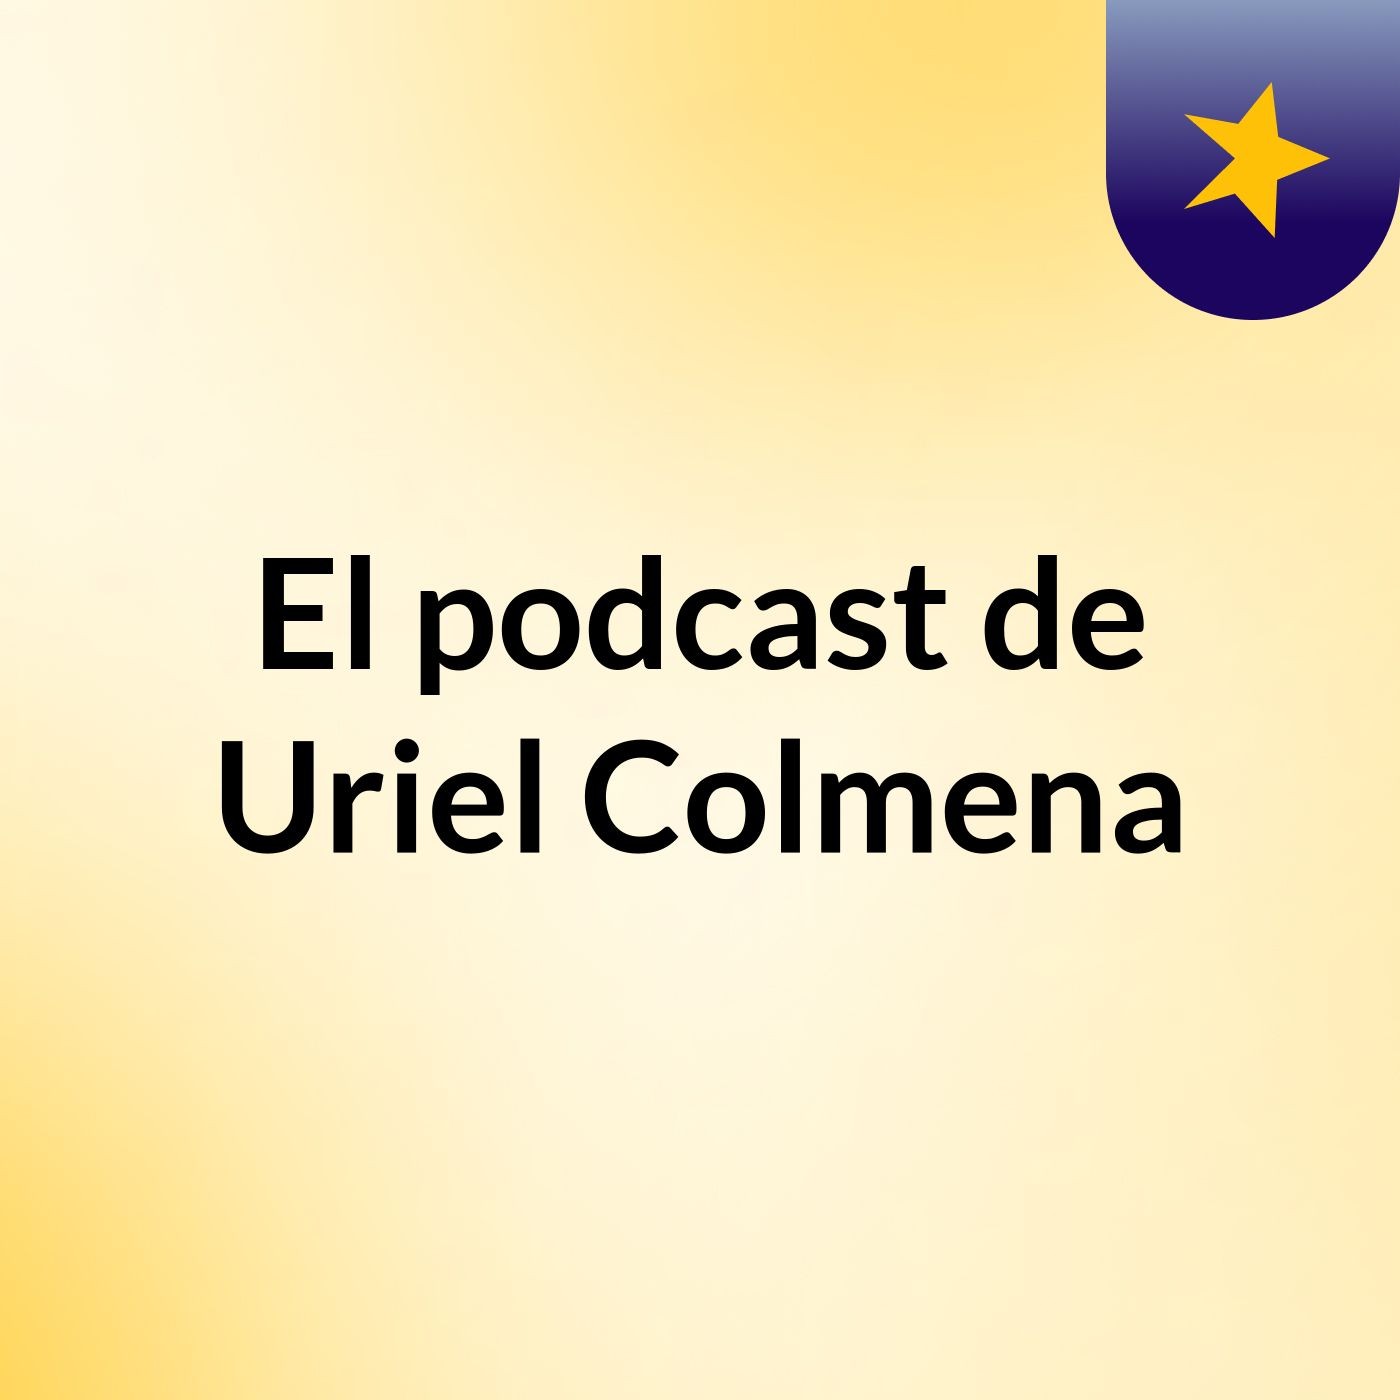 El podcast de Uriel Colmena